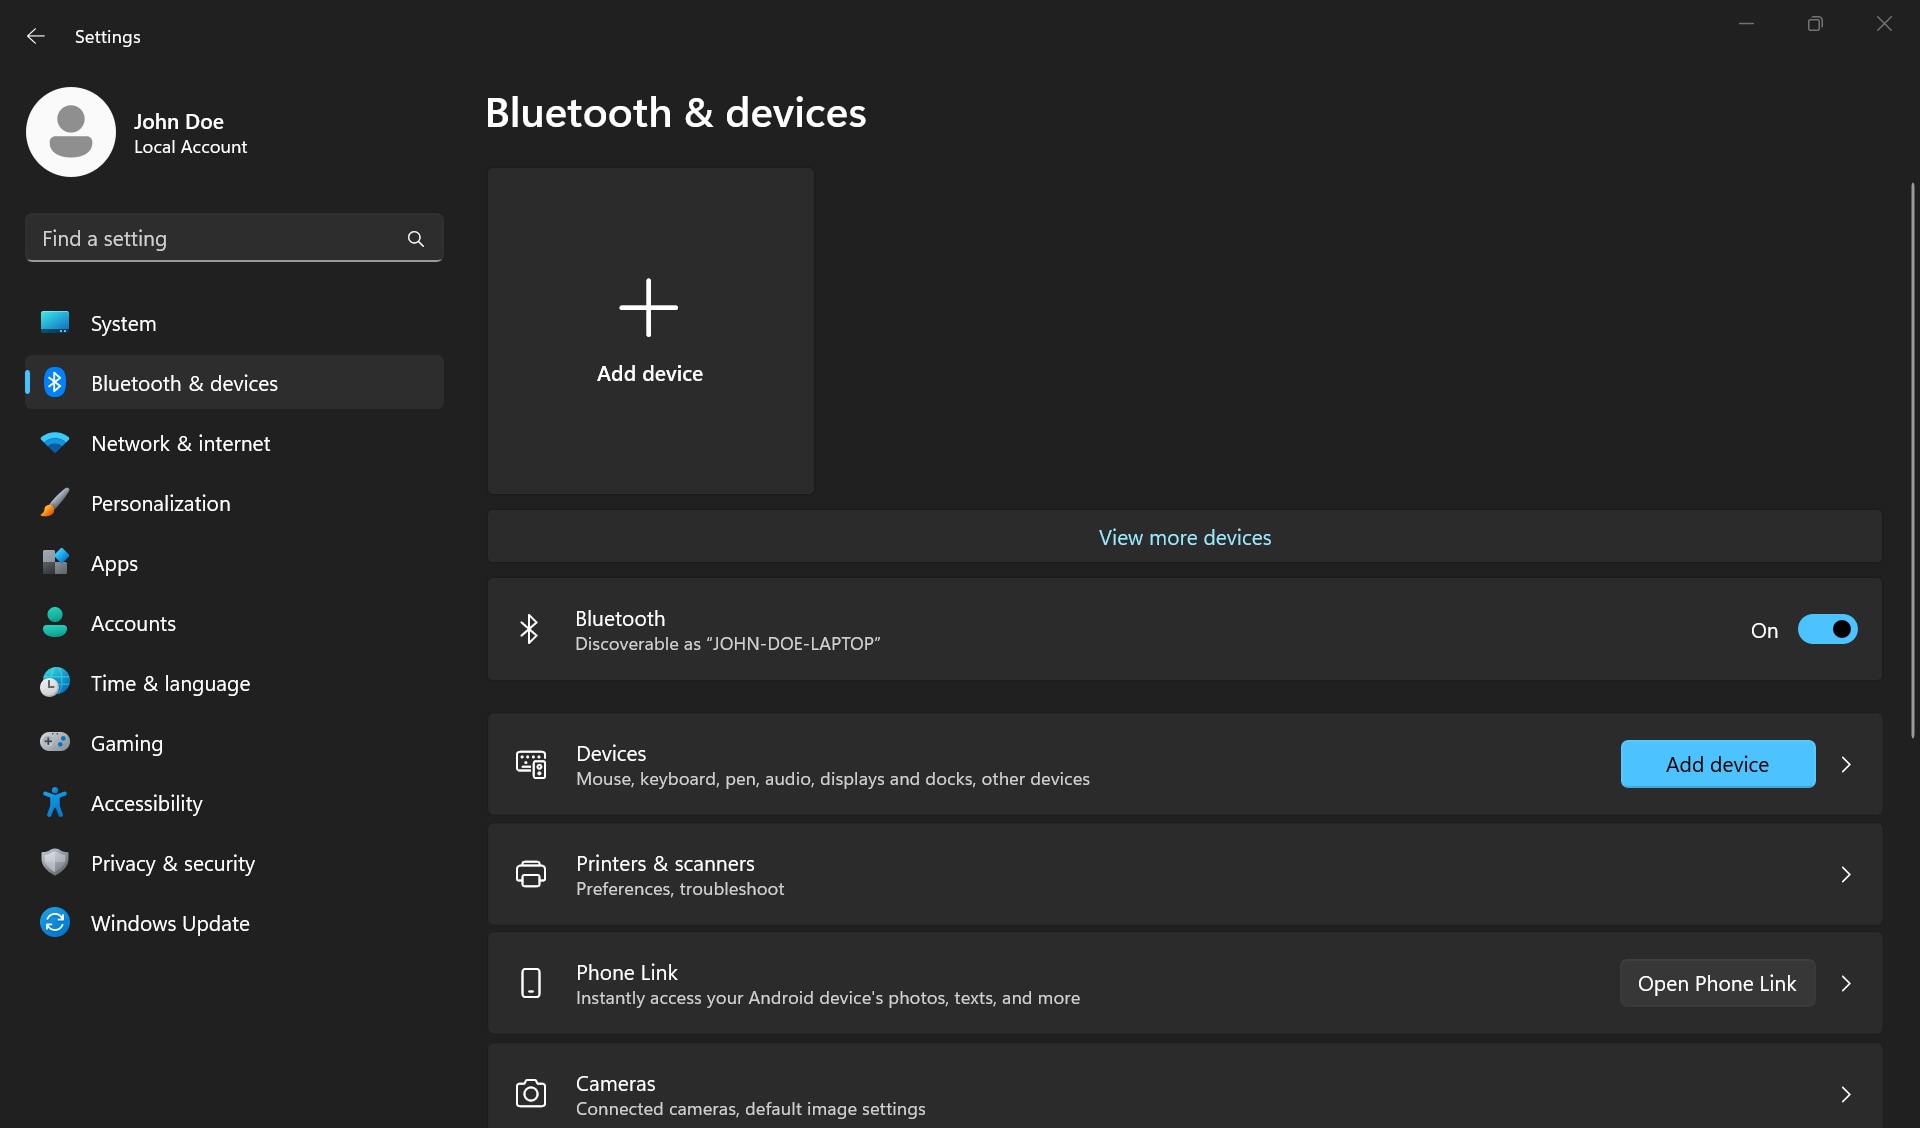 Botón de Agregar dispositivo y activar y desactivar el botón de alternancia en la configuración de Bluetooth en Windows